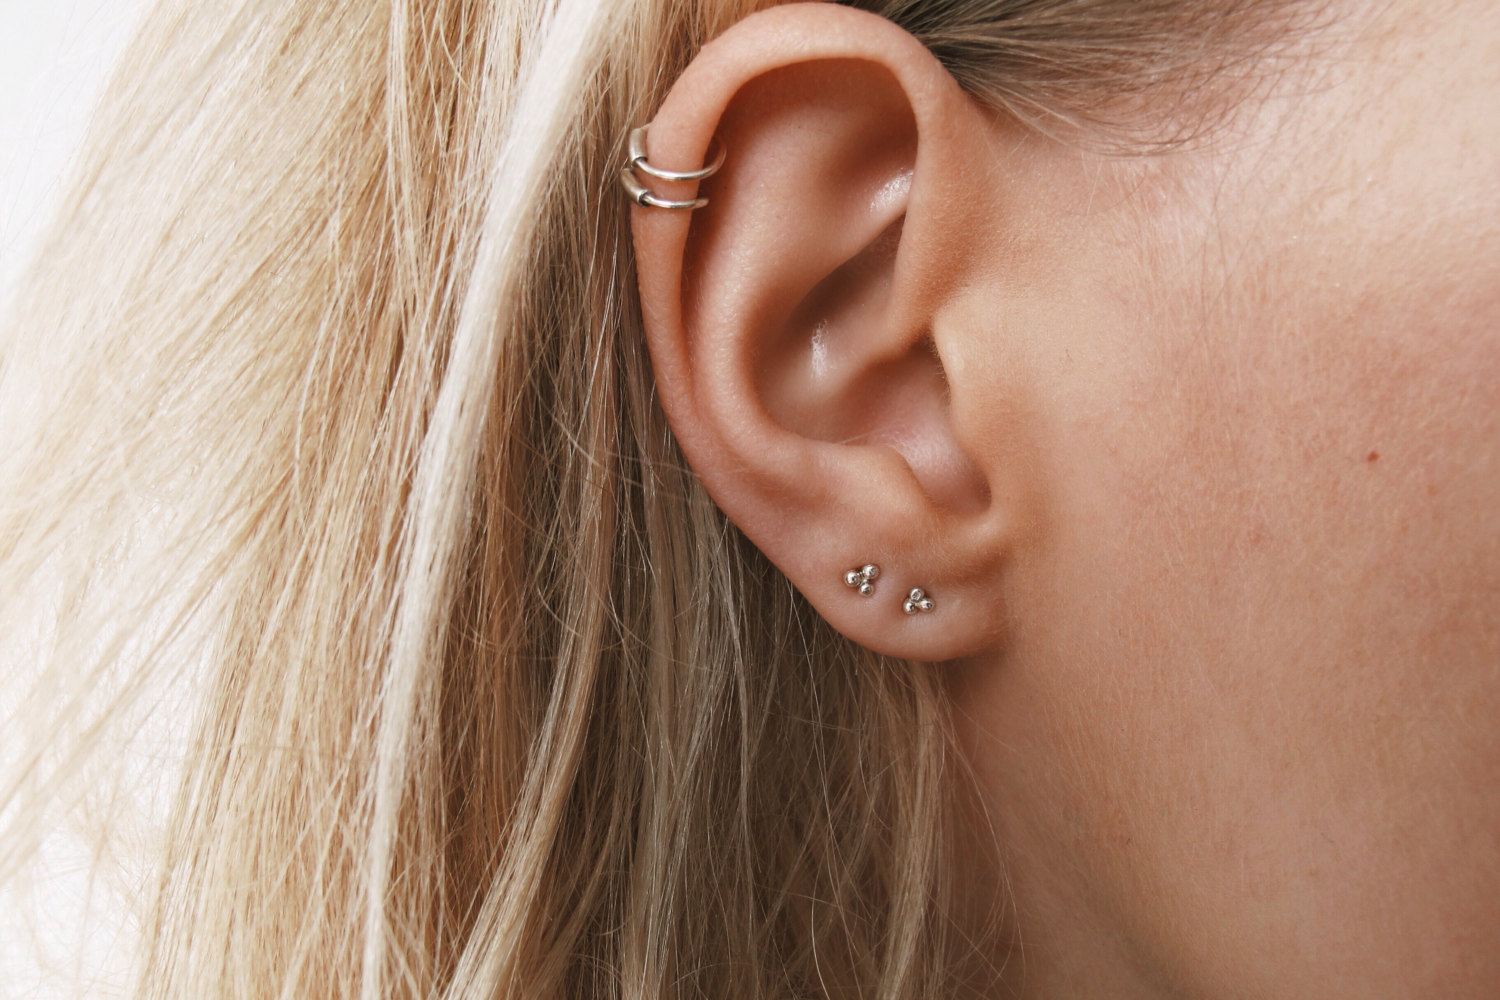 6. Cute Helix Ear Tattoos - wide 1